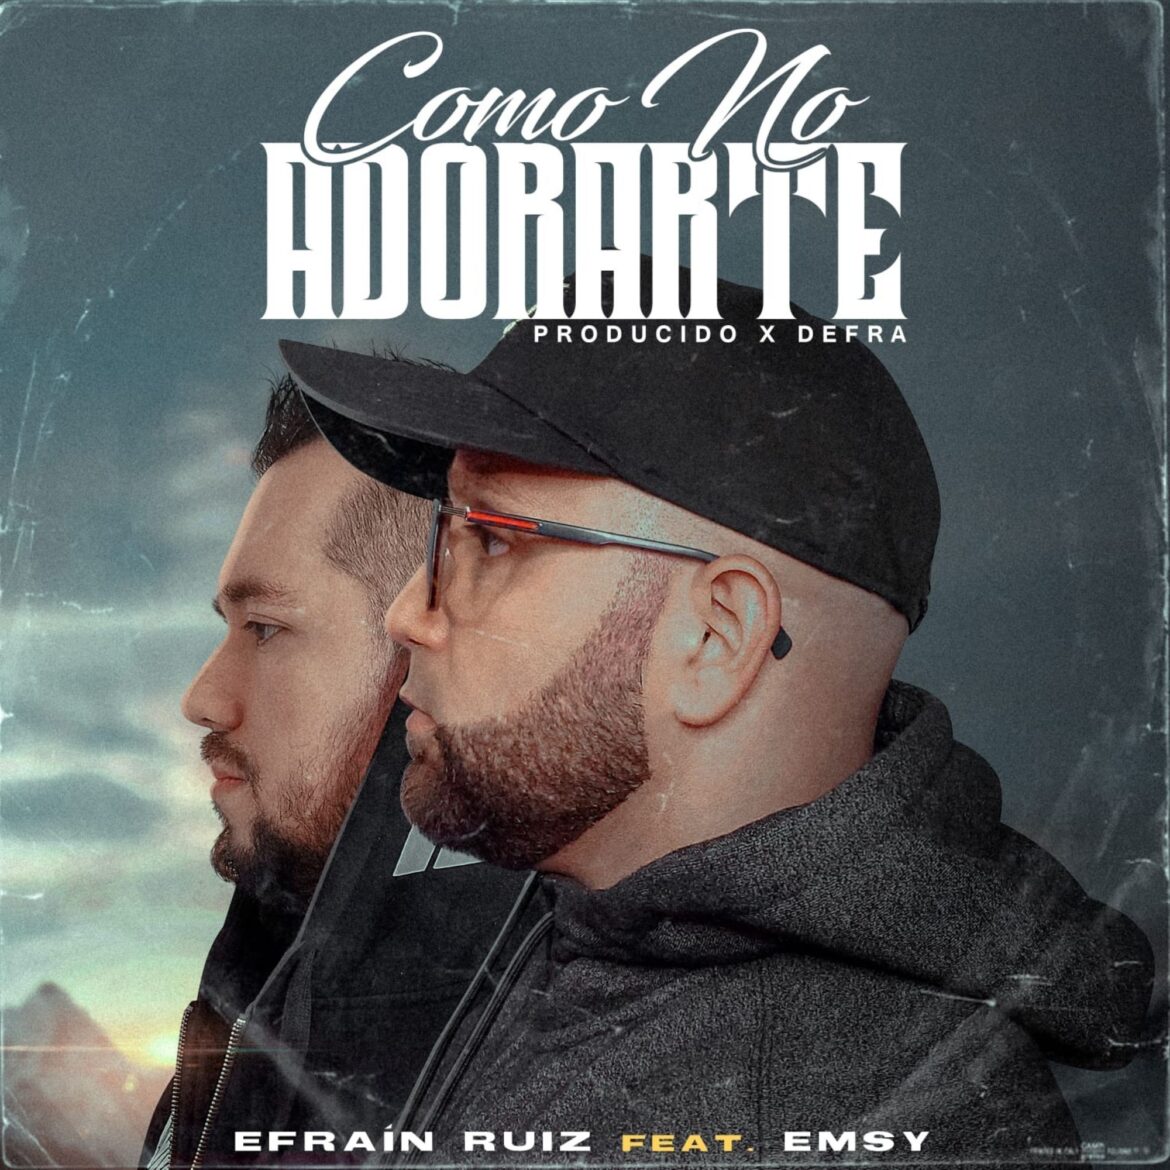 El cantante urbano Efraín Ruíz presenta su sencillo “Cómo No Adorarte” uniendo su voz y talento junto a su colega chileno Emsy